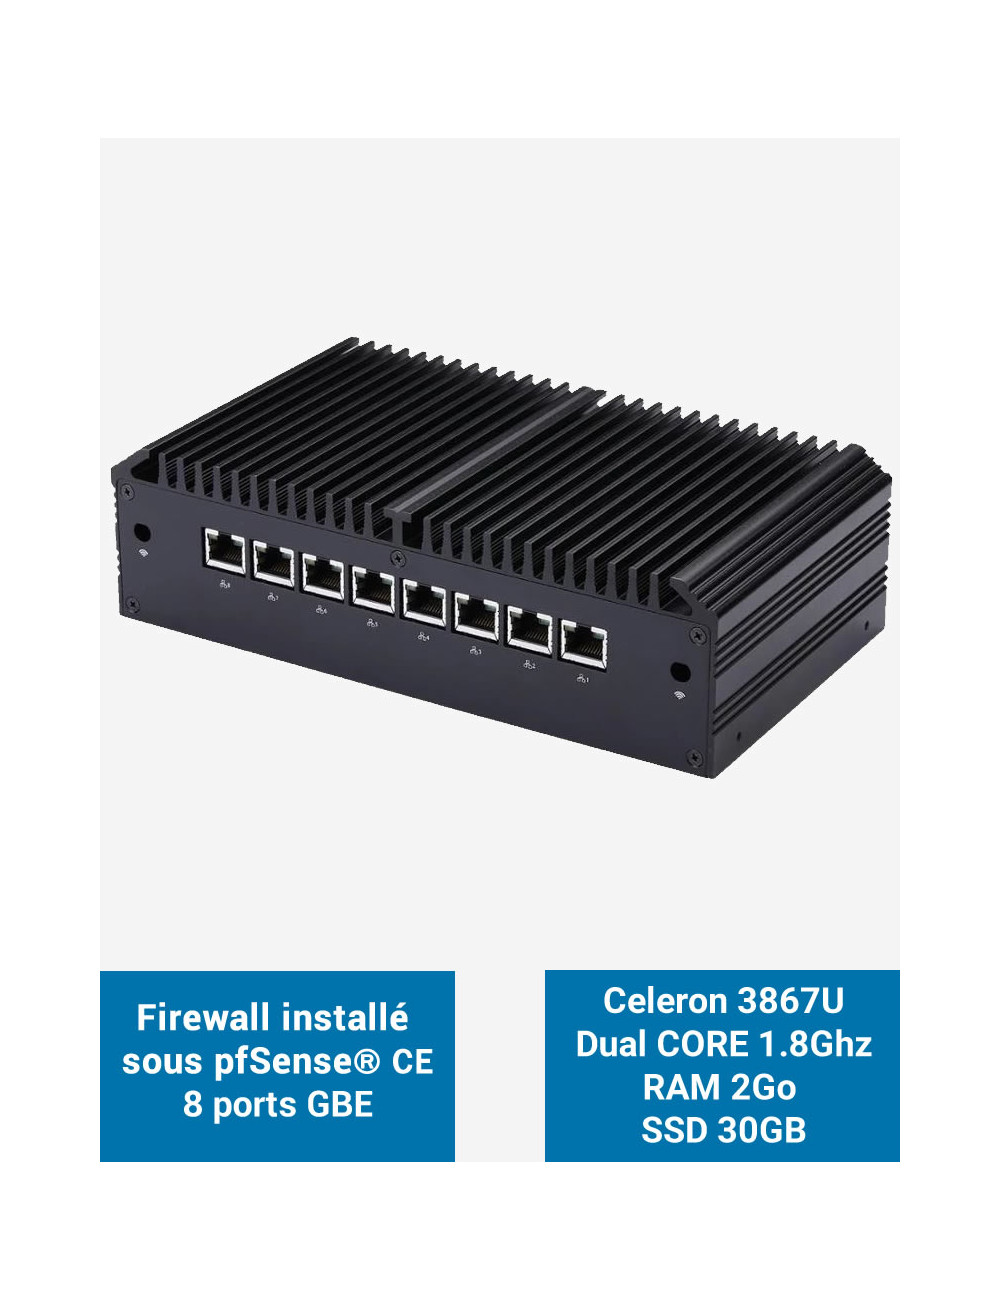 Firewall Q8x Celeron 3867U 8 ports GbE 2GB 30GB